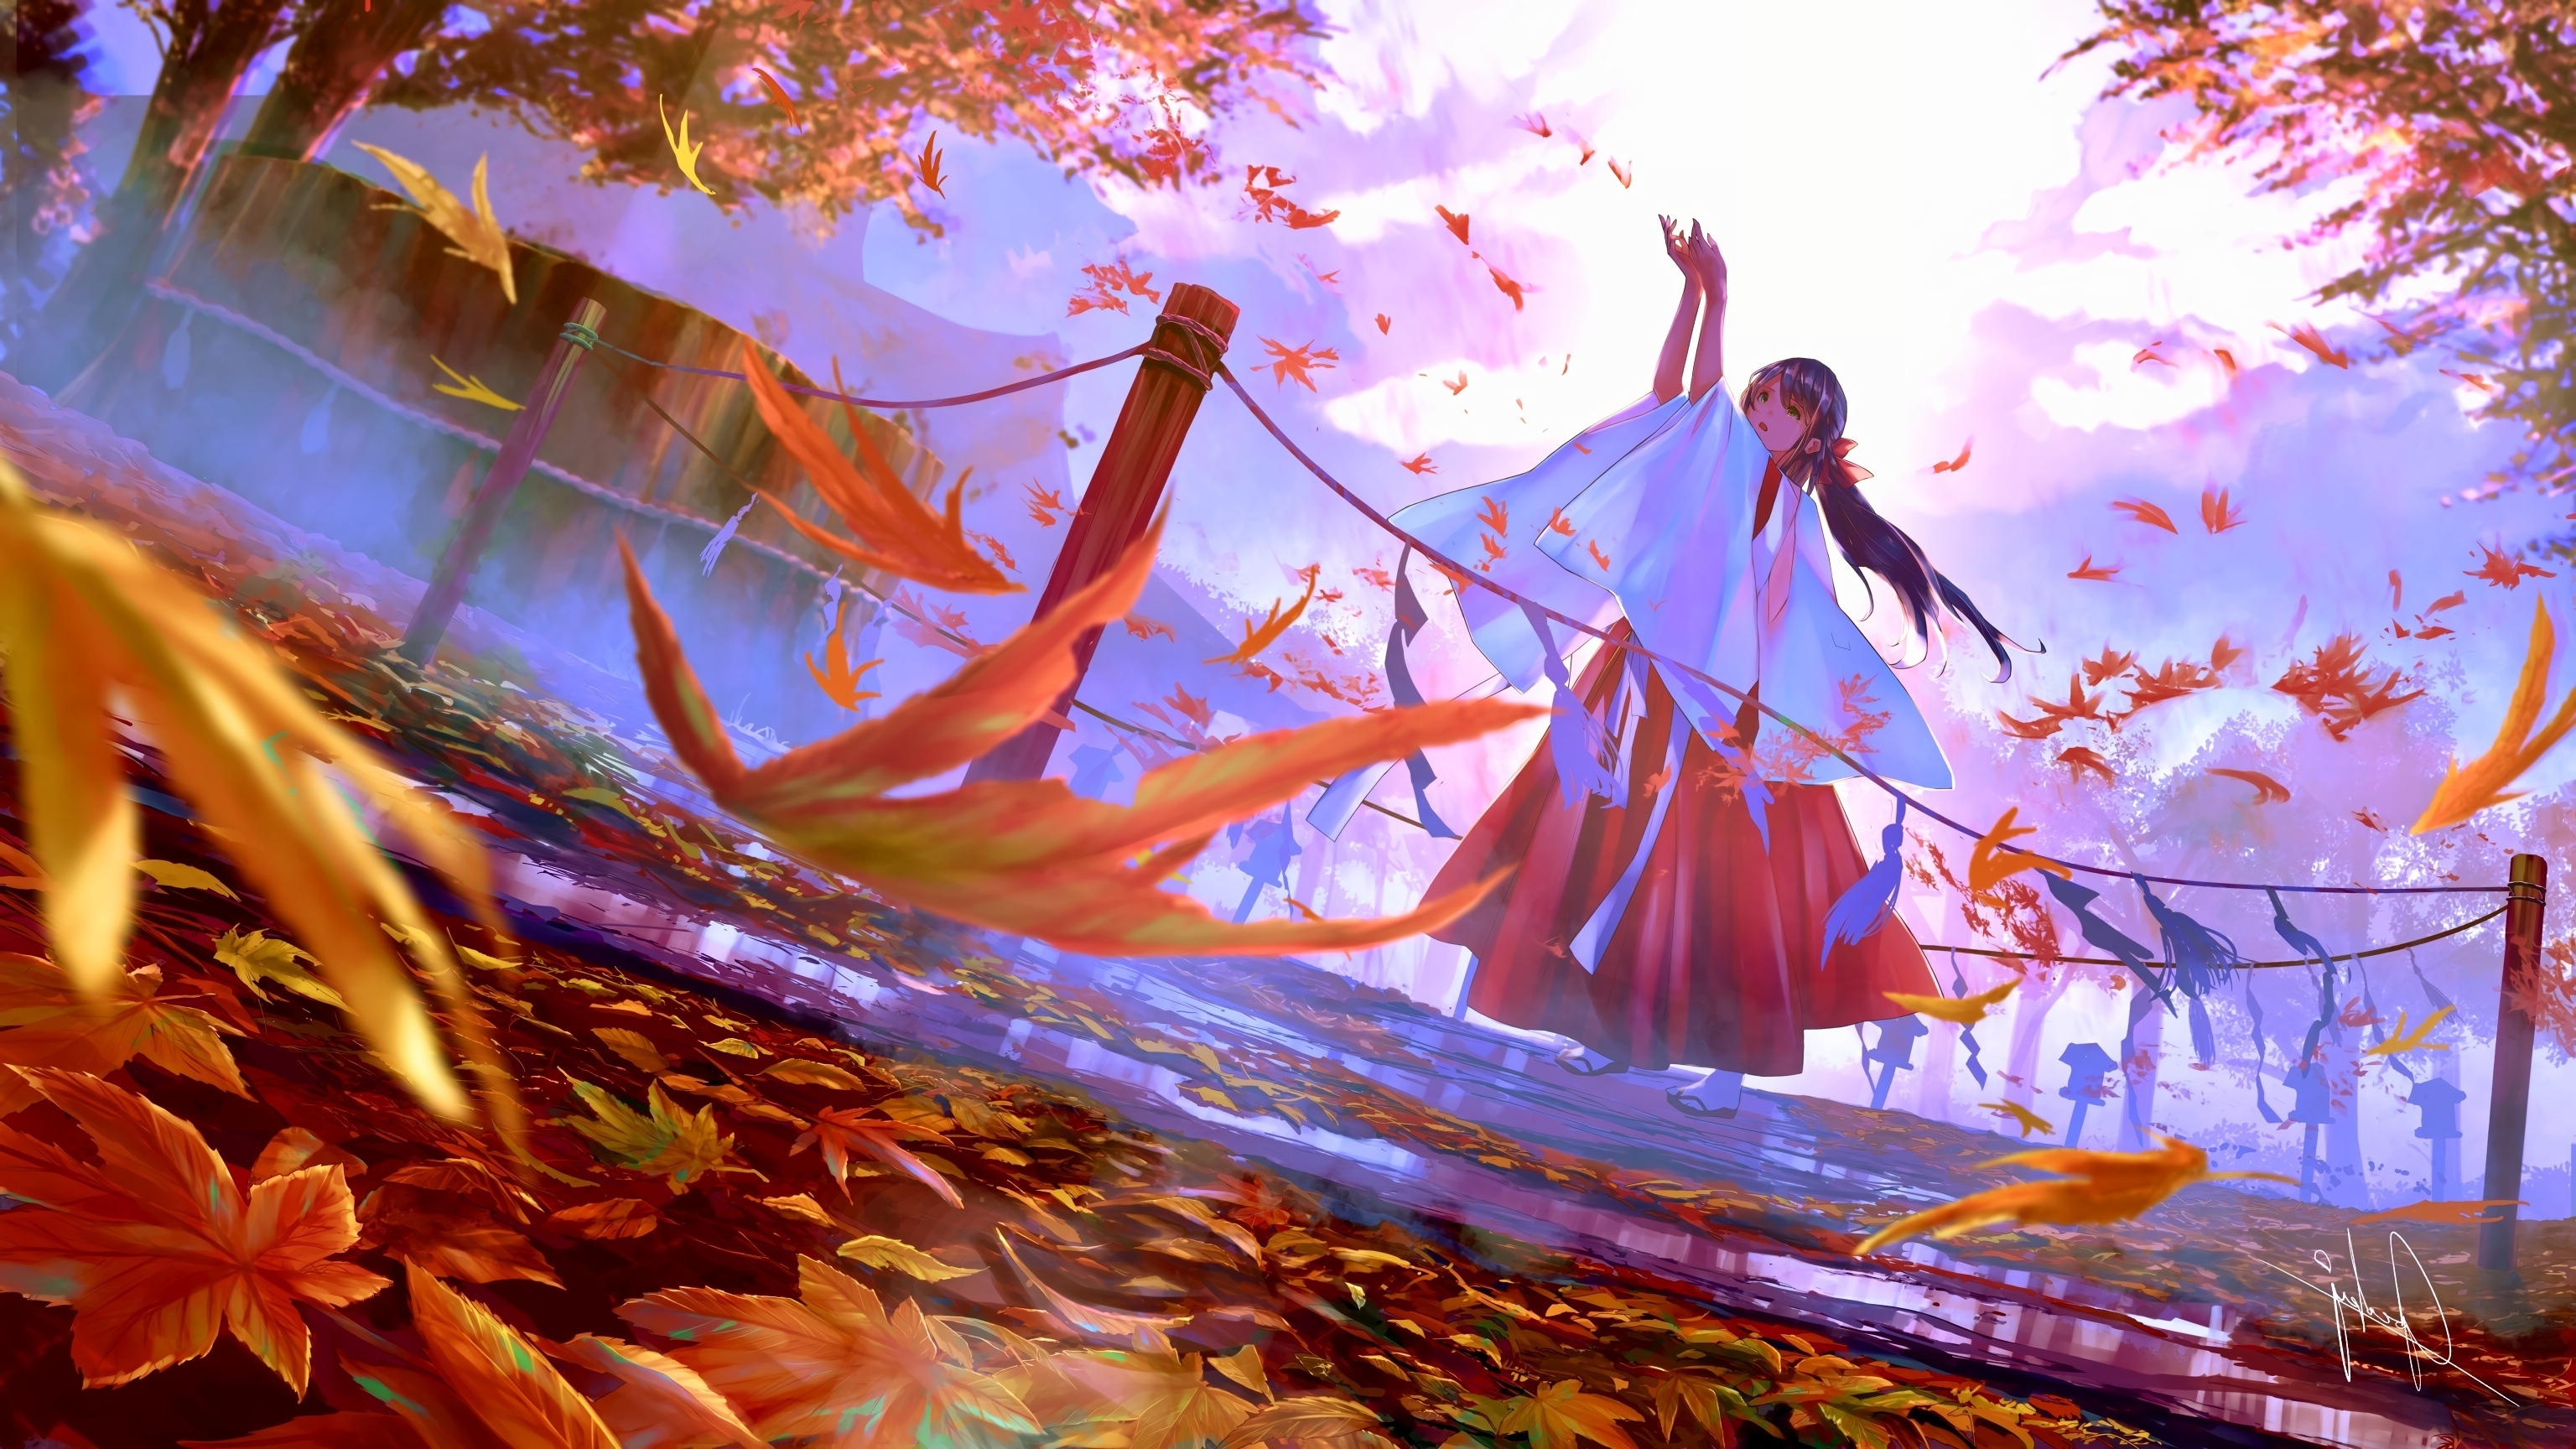 Wallpaper Autumn, Leaves, Anime Landscape, Anime Miko Girl, Shrine:3072x1728